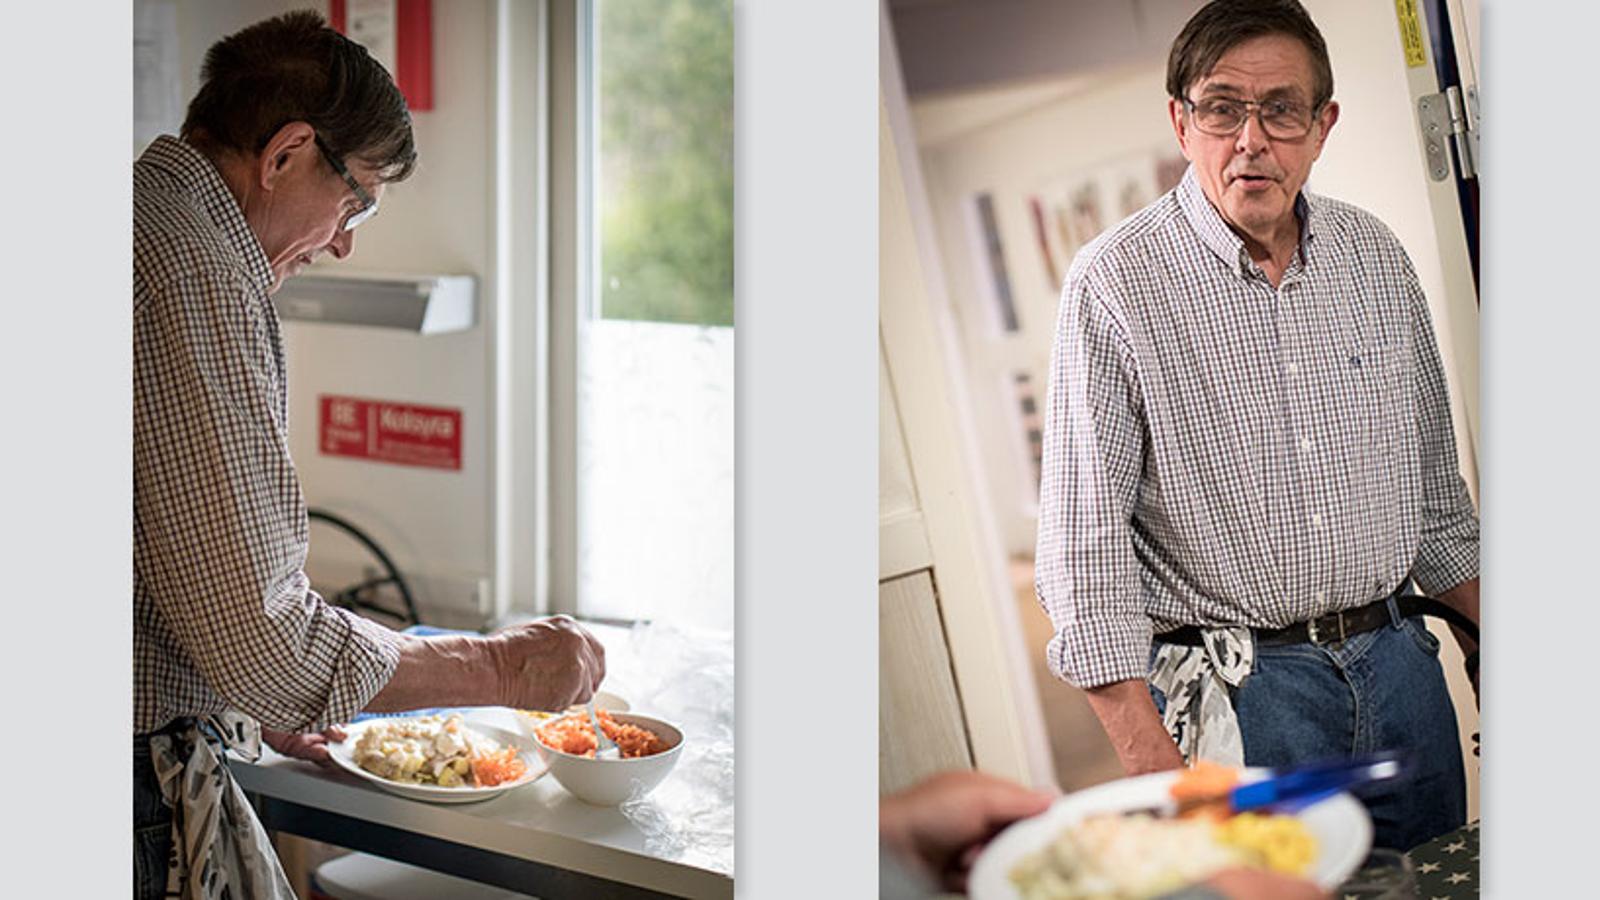 Till vänster: Börje Glandberger står i köket på Sagahemmet i Uppsala och gör iordning en tallrik med mat på. Till höger: Börje står i en dörröppning och tittar på en person som håller i en tallrik med mat på.